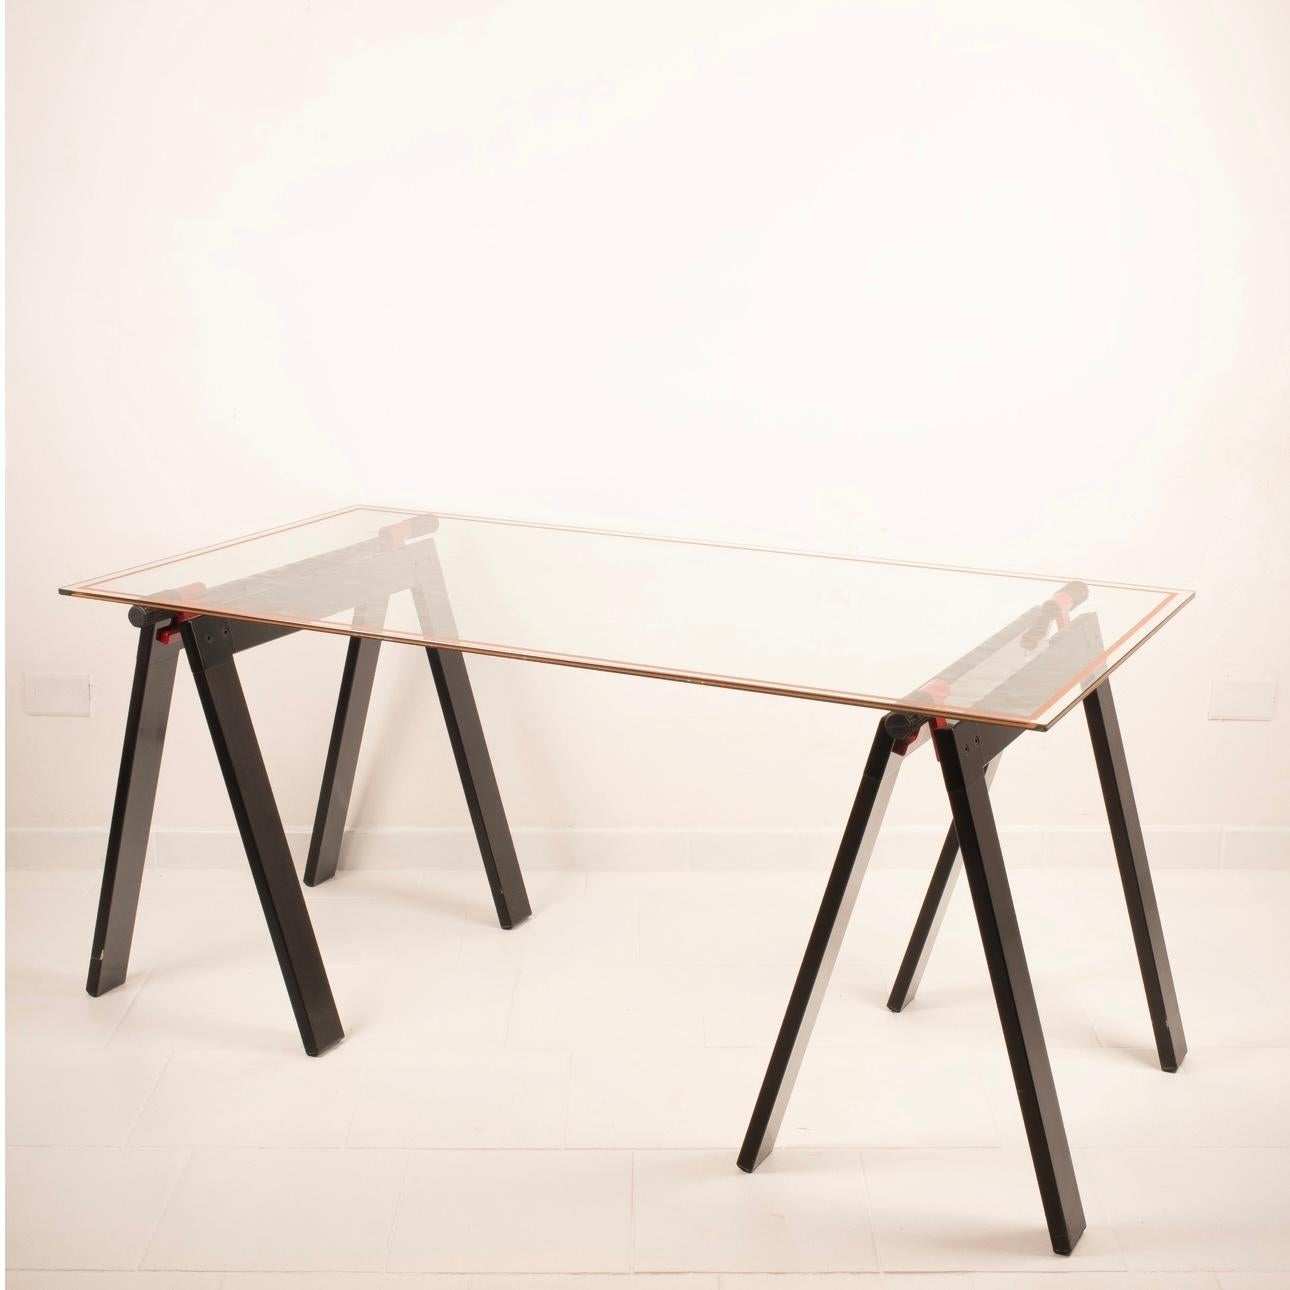 La table Gateano est une pièce unique, créée par le célèbre designer Gae Aulenti et produite par Zanotta dans les années 1970.
Cet élégant meuble allie forme et fonction de manière surprenante, offrant une touche de sophistication vintage à votre